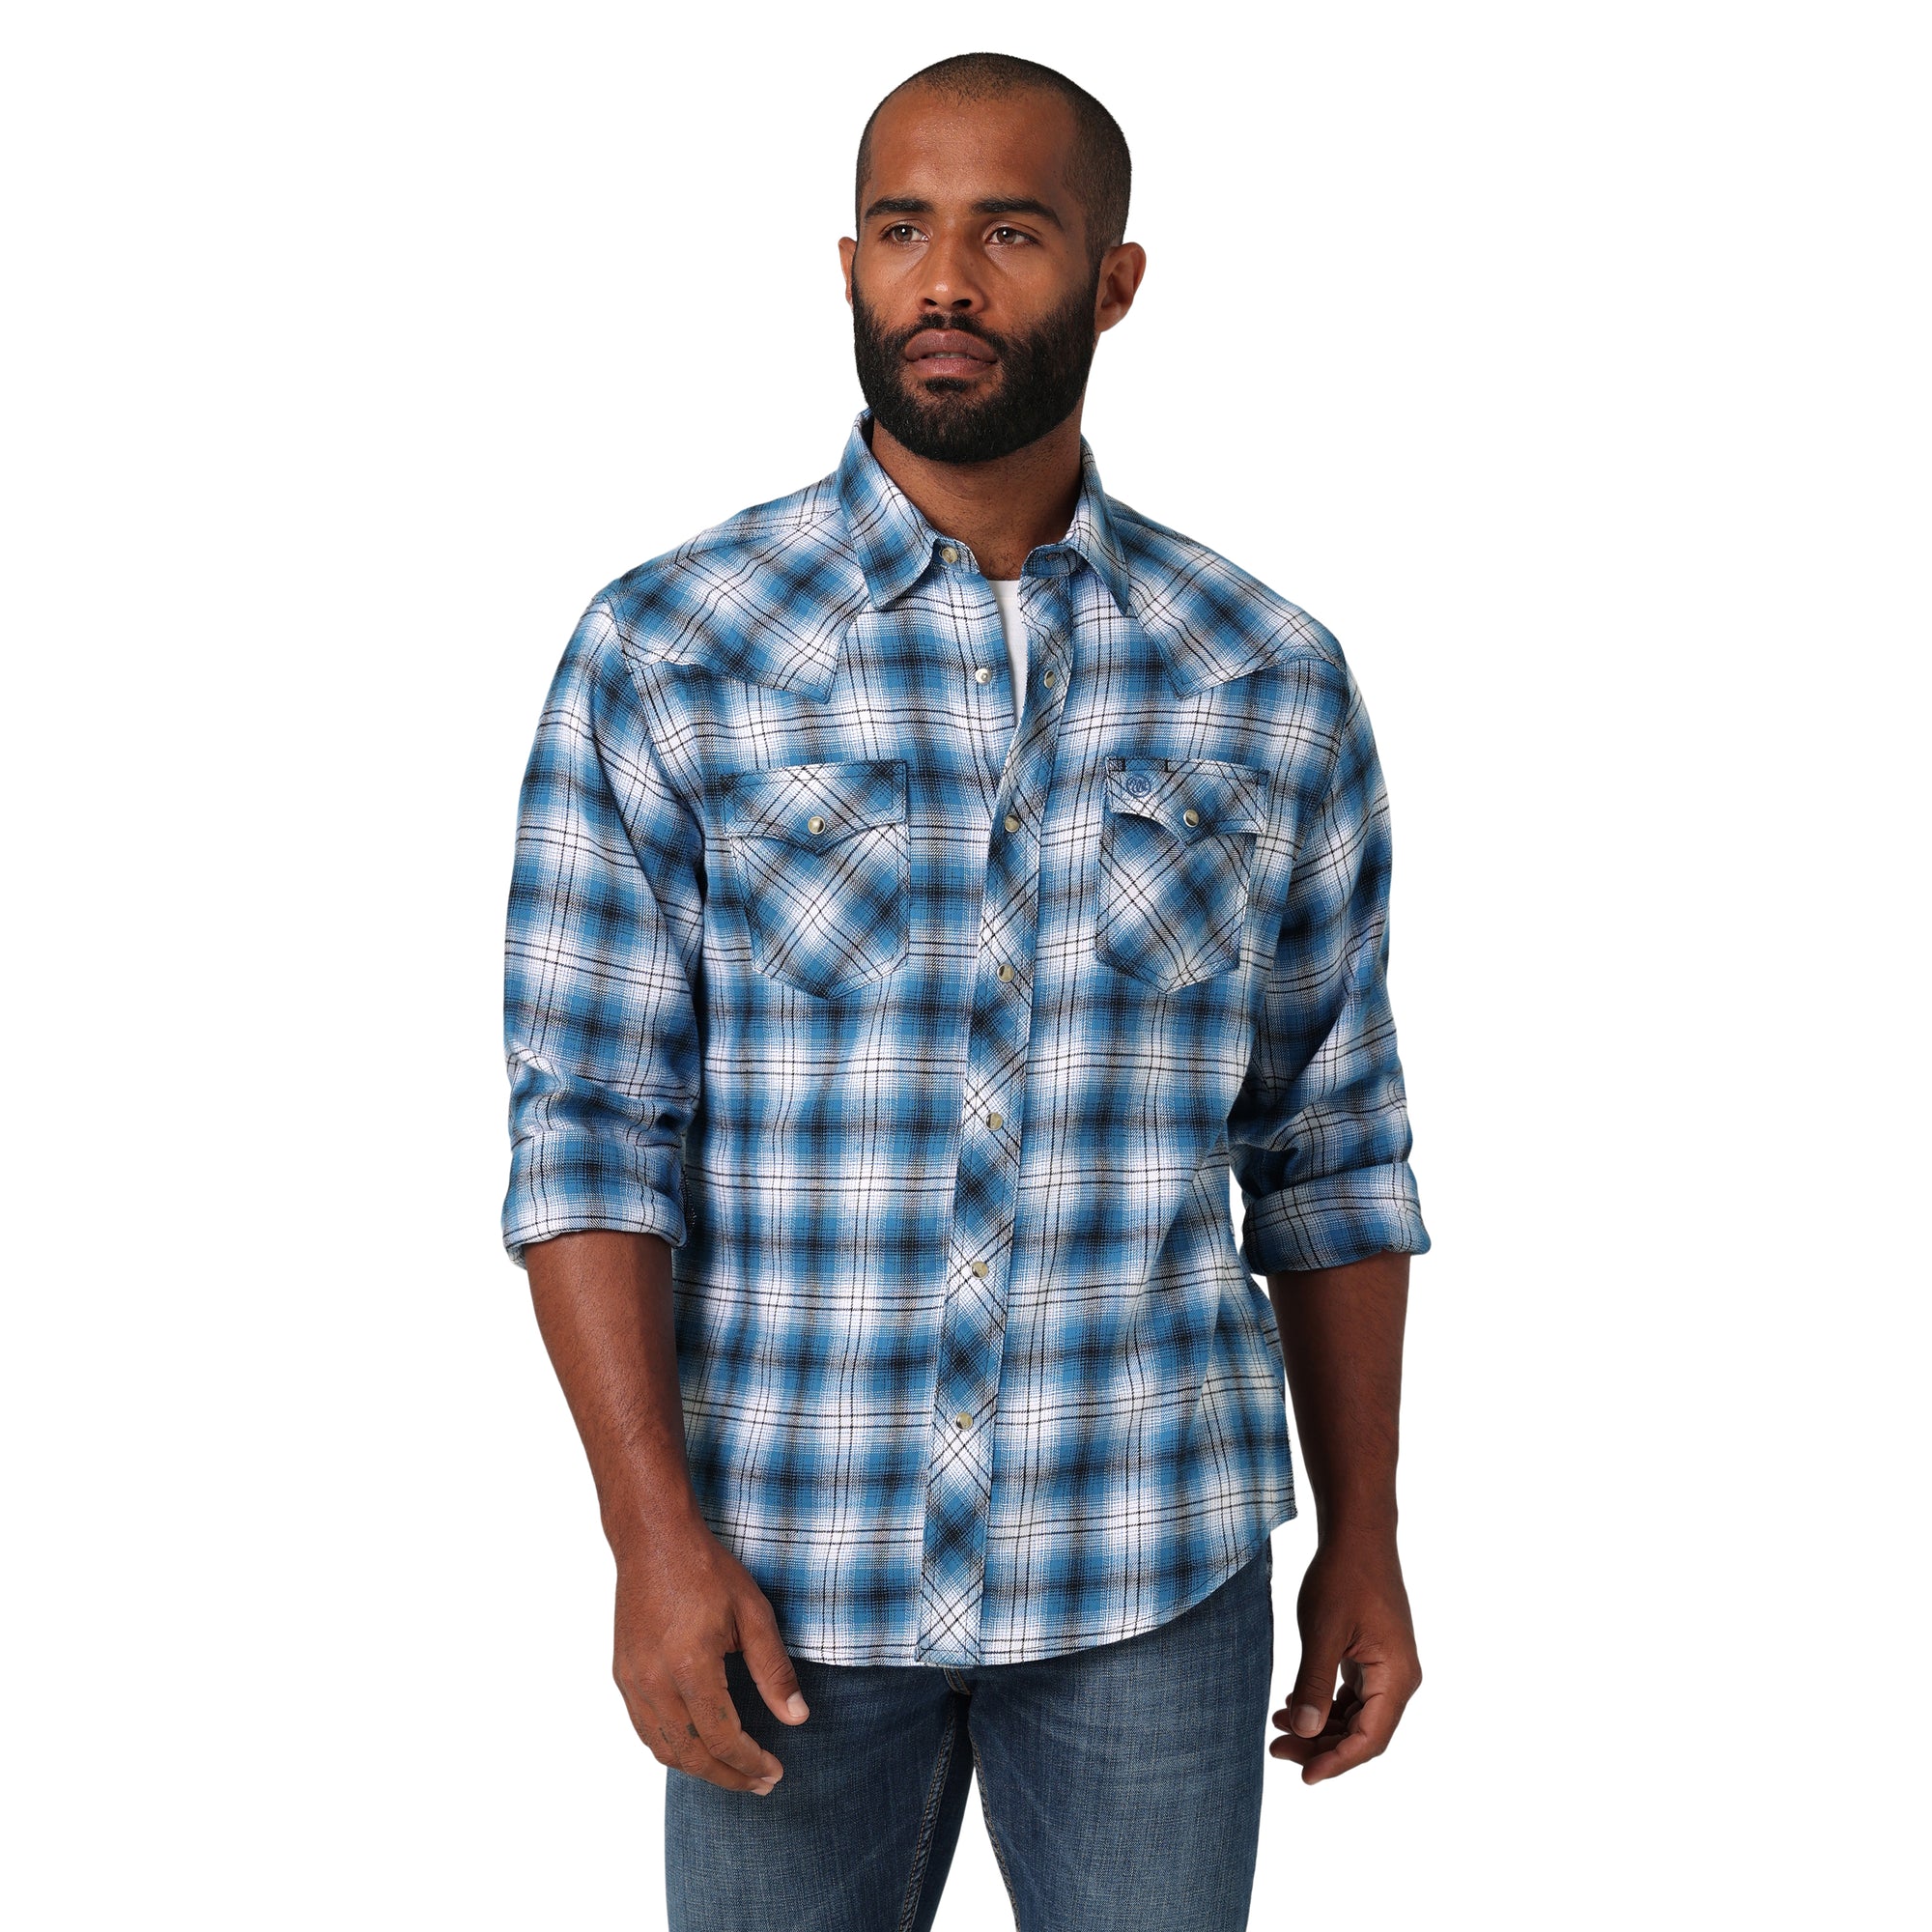 Wrangler Men's Retro Modern Fit Blue/Black Flannel Snap Shirt